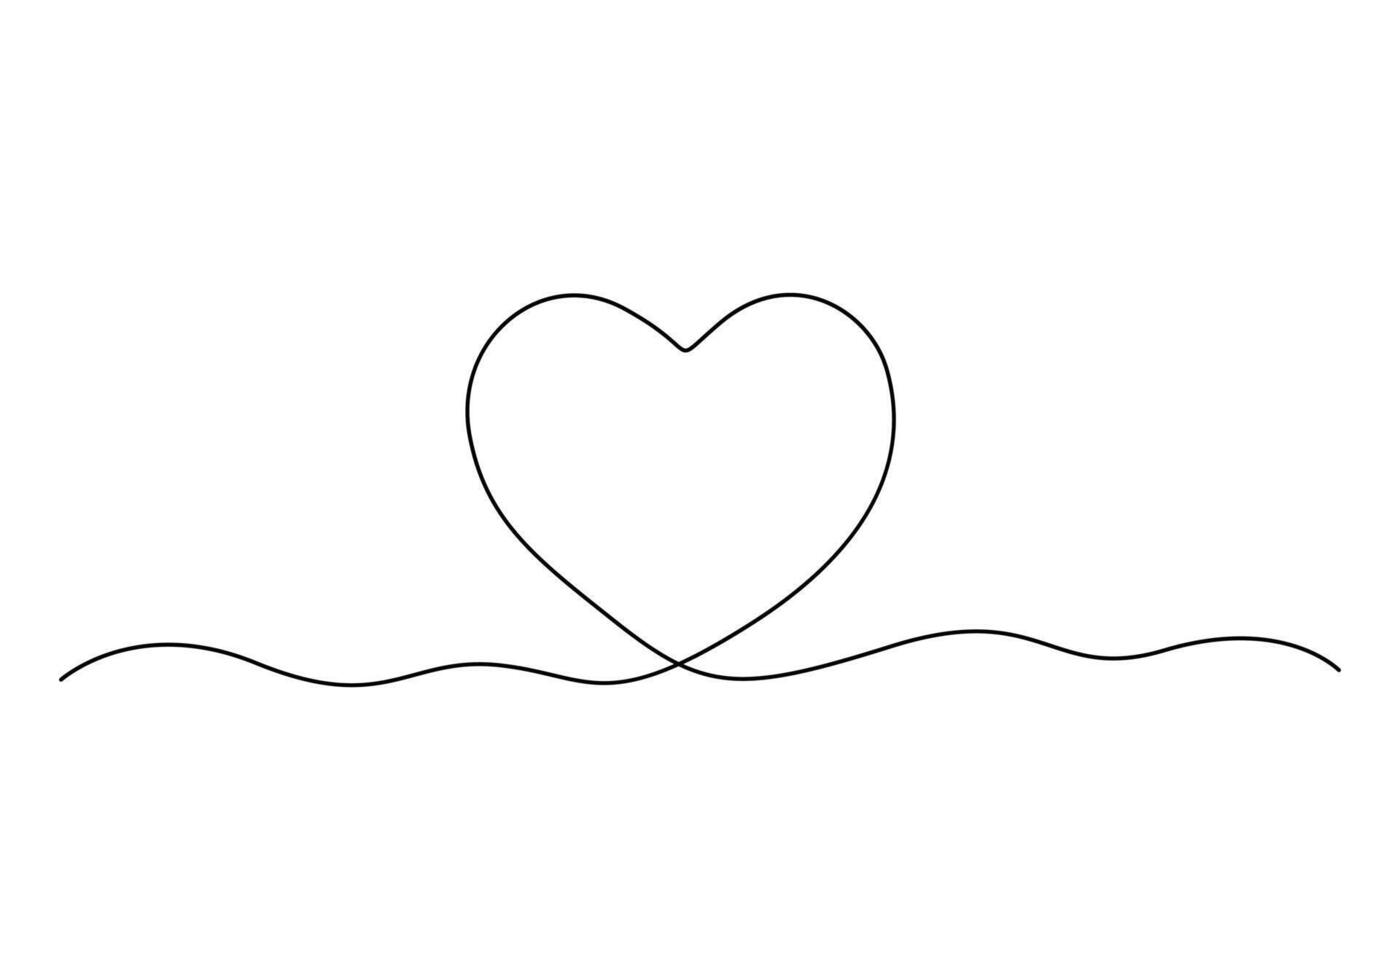 kontinuerlig ett linje teckning av kärlek tecken med hjärta symbol vektor illustration